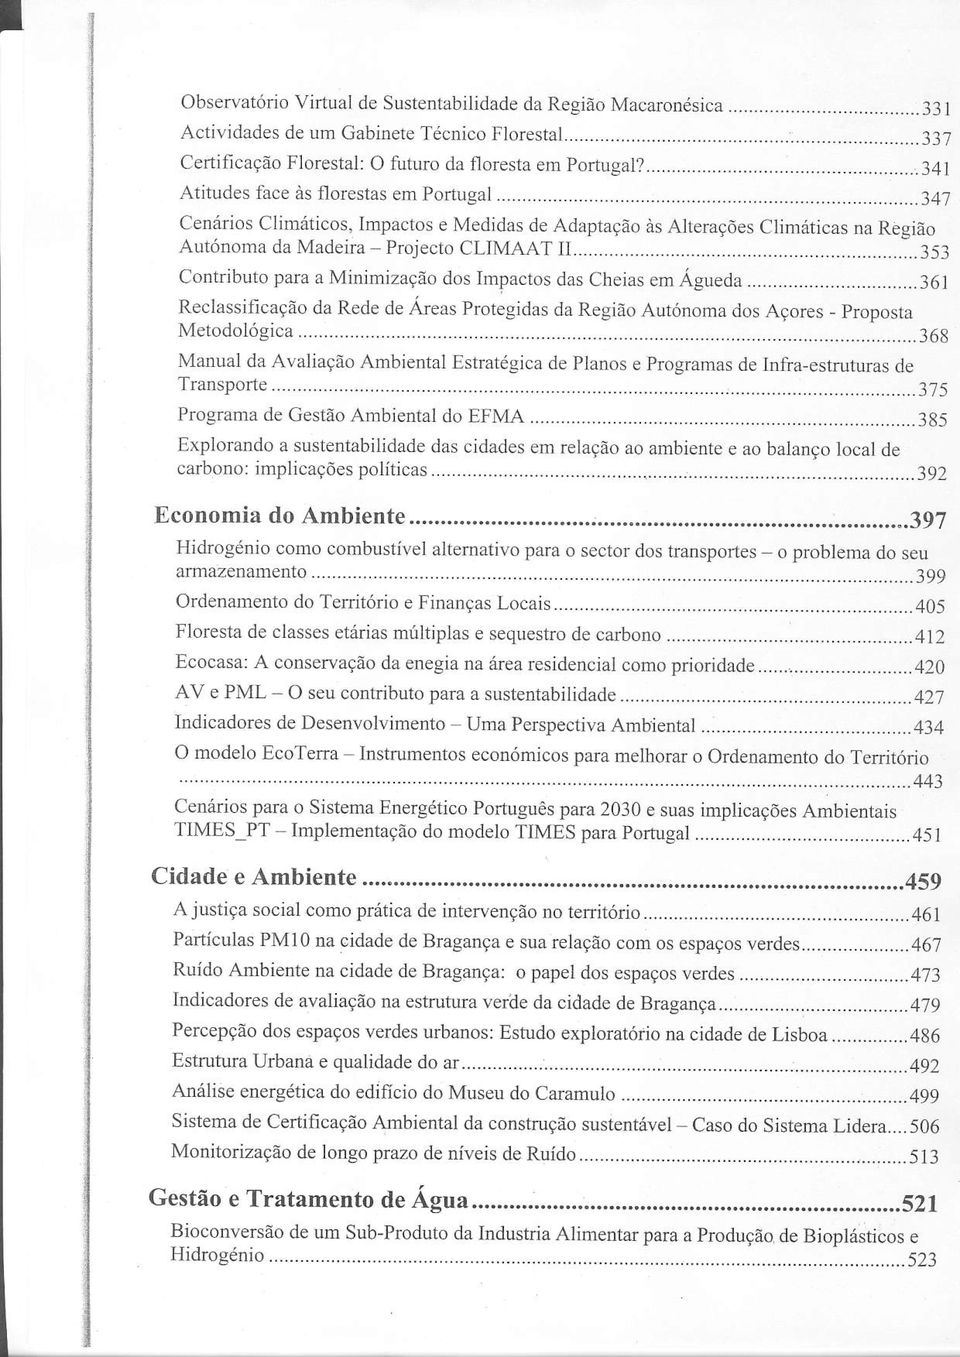 ........35 Contributo para a Minimização dos Impactos das Cheias em Águeda... J6l RecÌassificação da Rede de Áreas Protegidas da Região Autónoma dos Açores - proposta Metodológìca.